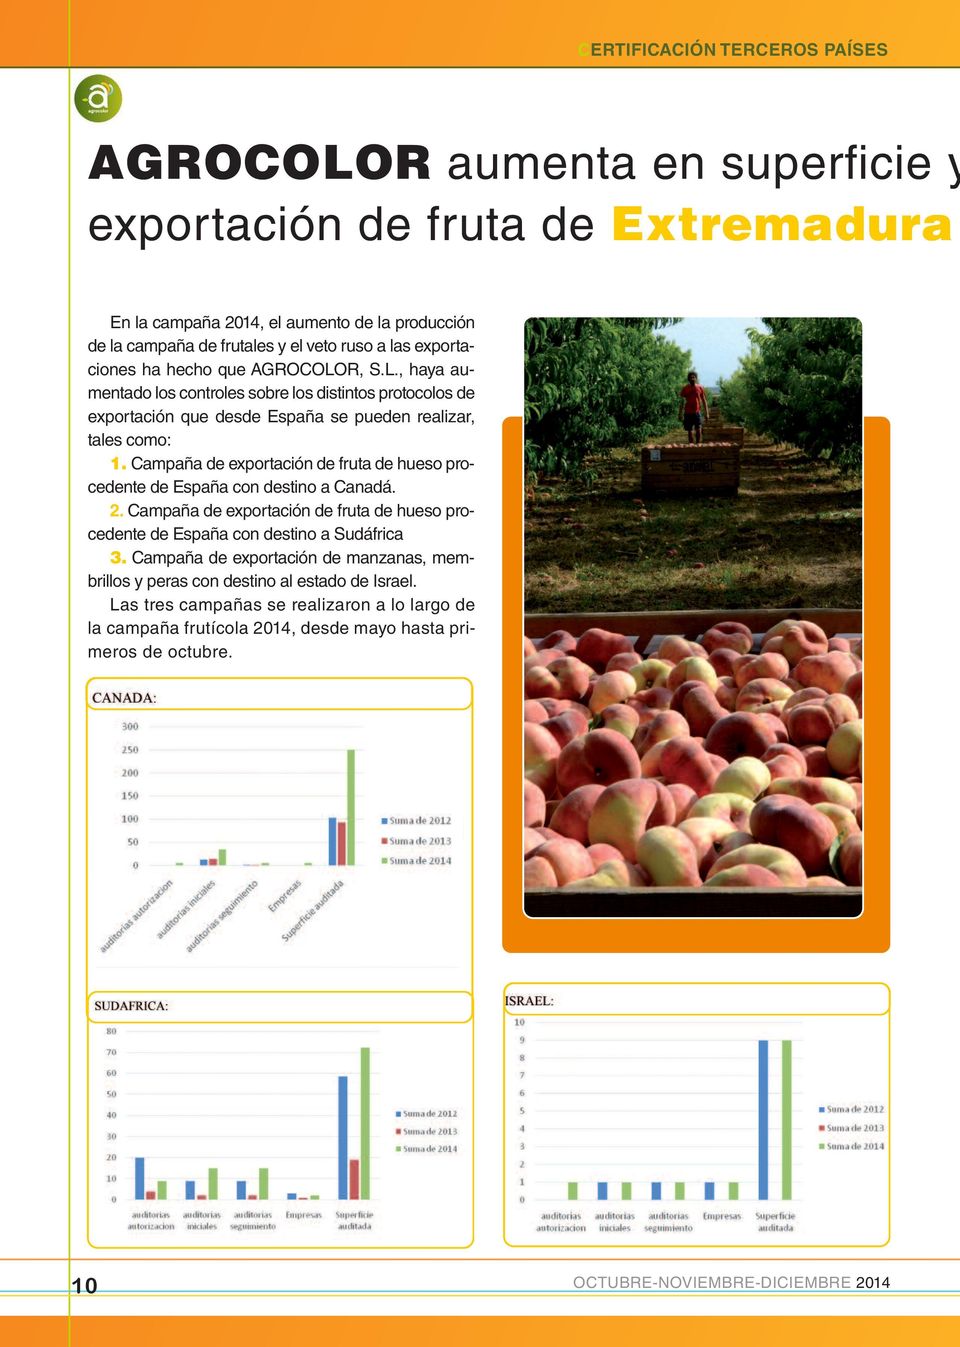 Campaña de exportación de fruta de hueso procedente de España con destino a Canadá. 2. Campaña de exportación de fruta de hueso procedente de España con destino a Sudáfrica 3.